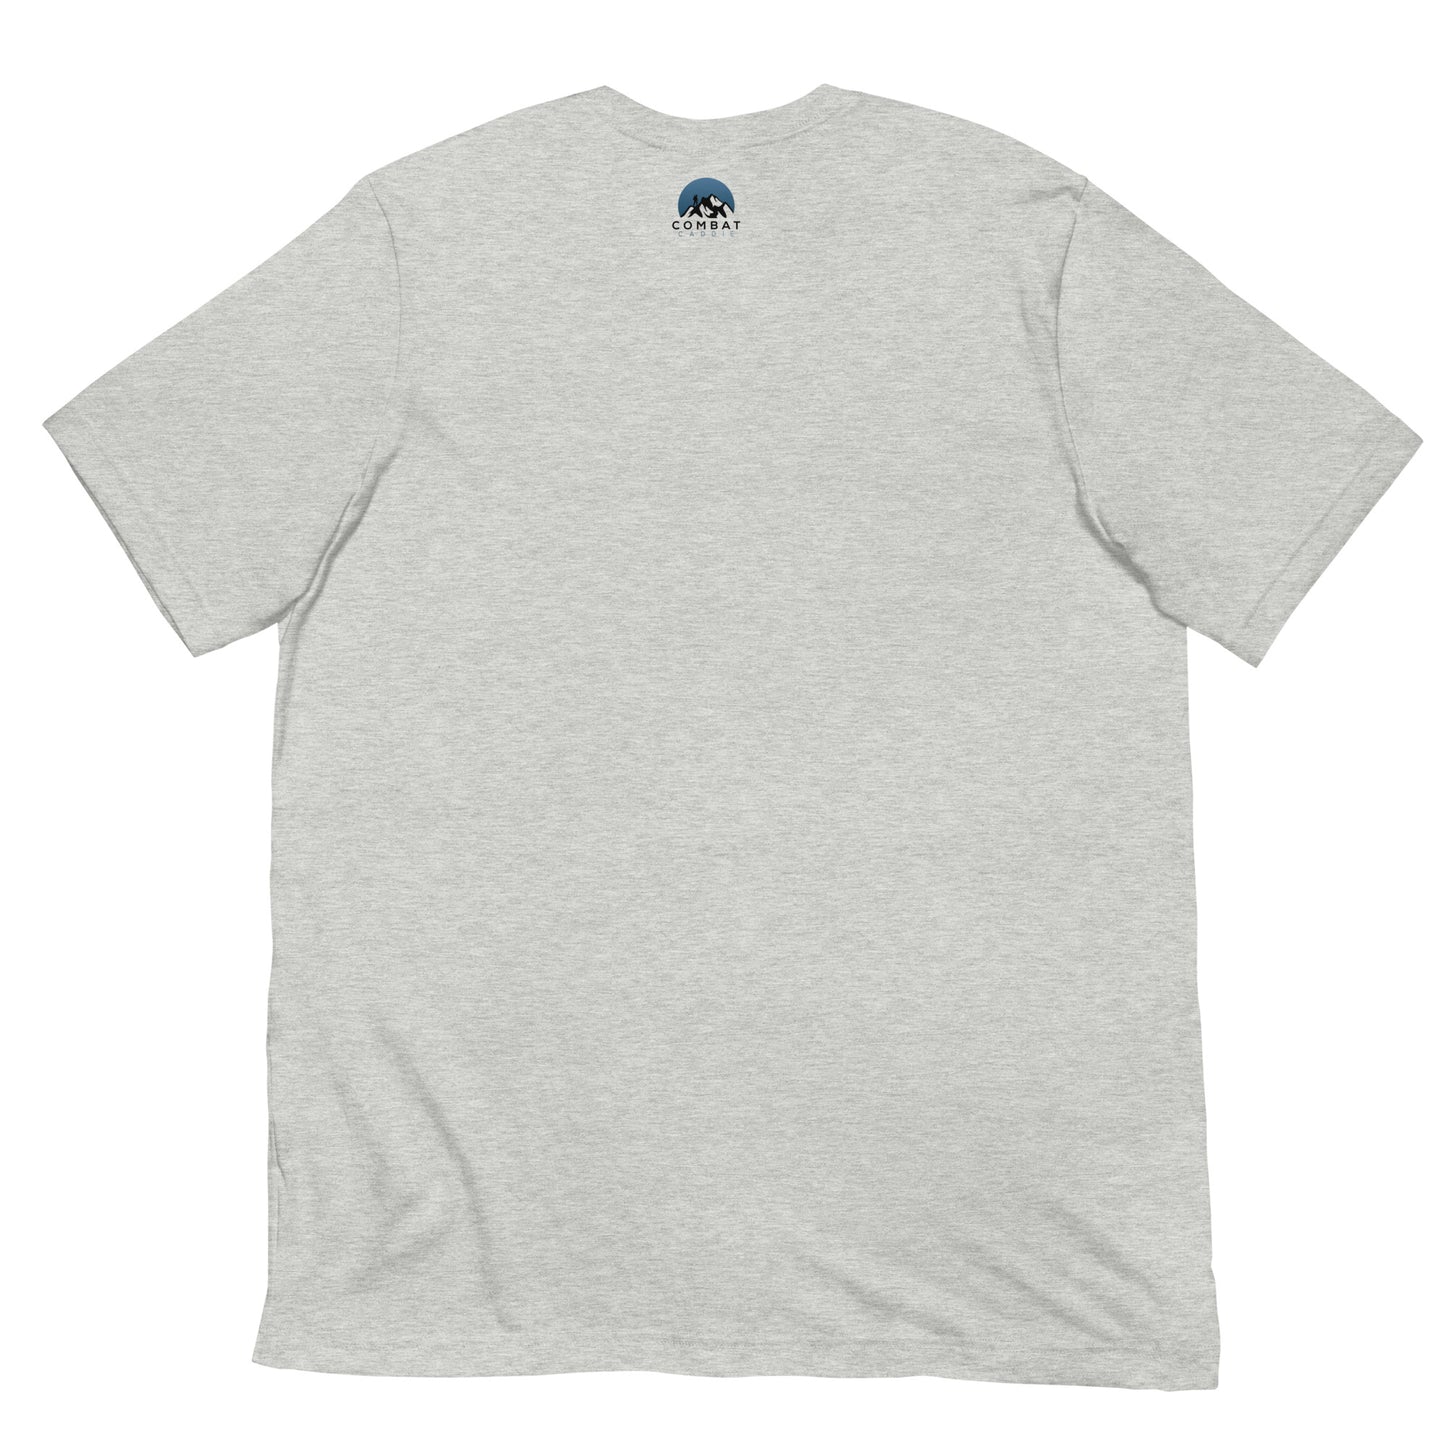 GOLF T-Shirt